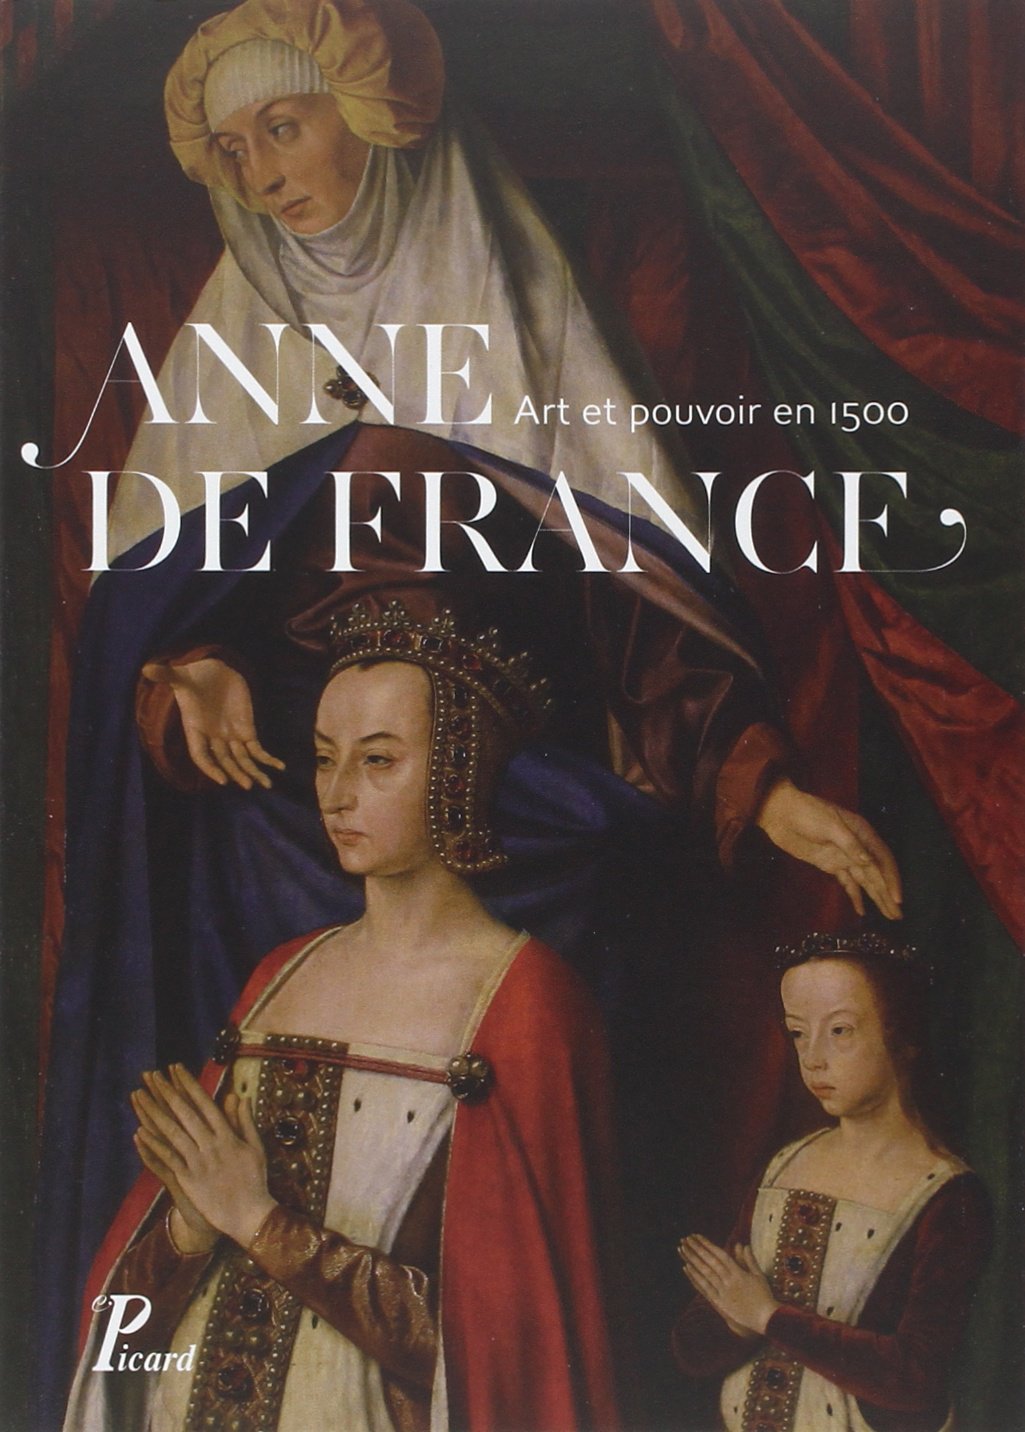 ÉPUISÉ - Anne de France. Art et pouvoir en 1500, (actes coll. Moulins, mars 2012), 2014, 221 p., 110 ill. n.b. et coul.